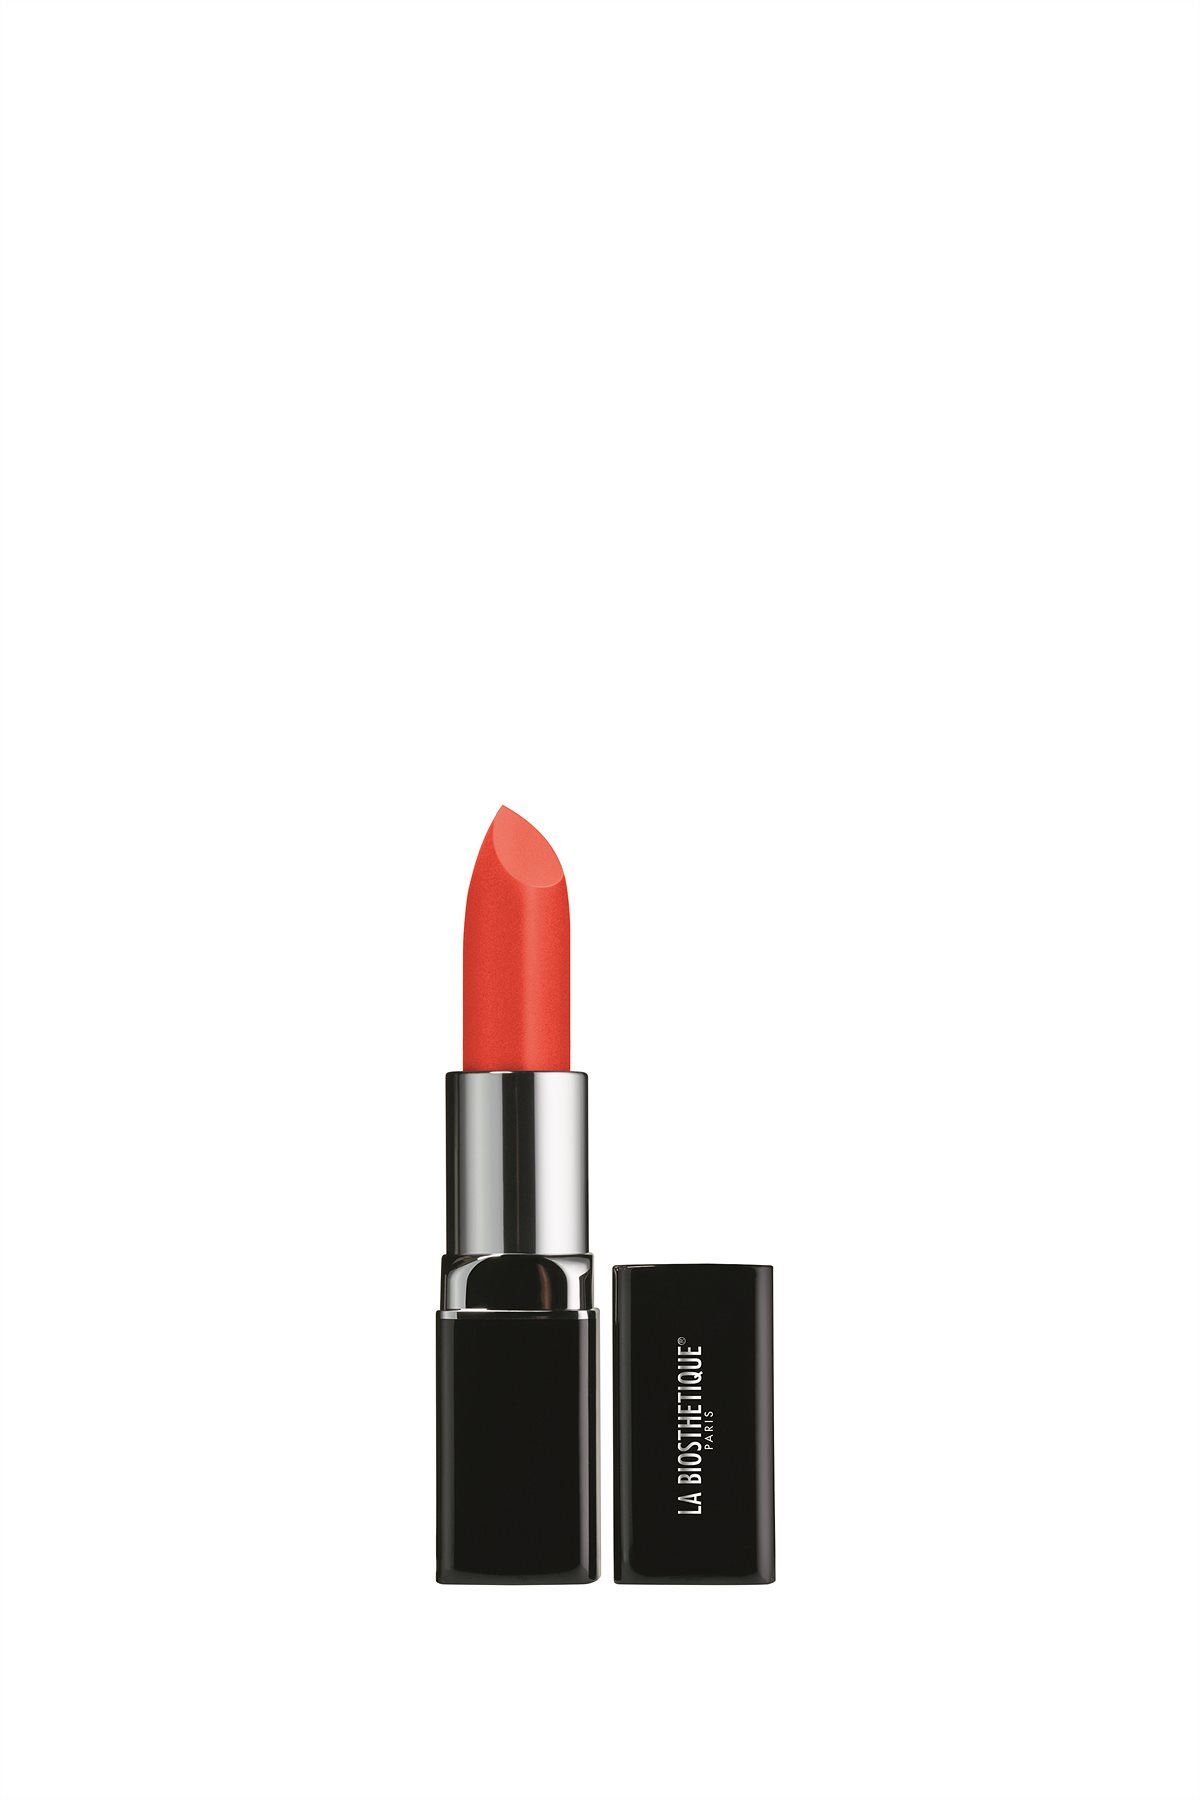 La Biosthétique_Sensual Lipstick in bitter orange_EUR 23,50,-